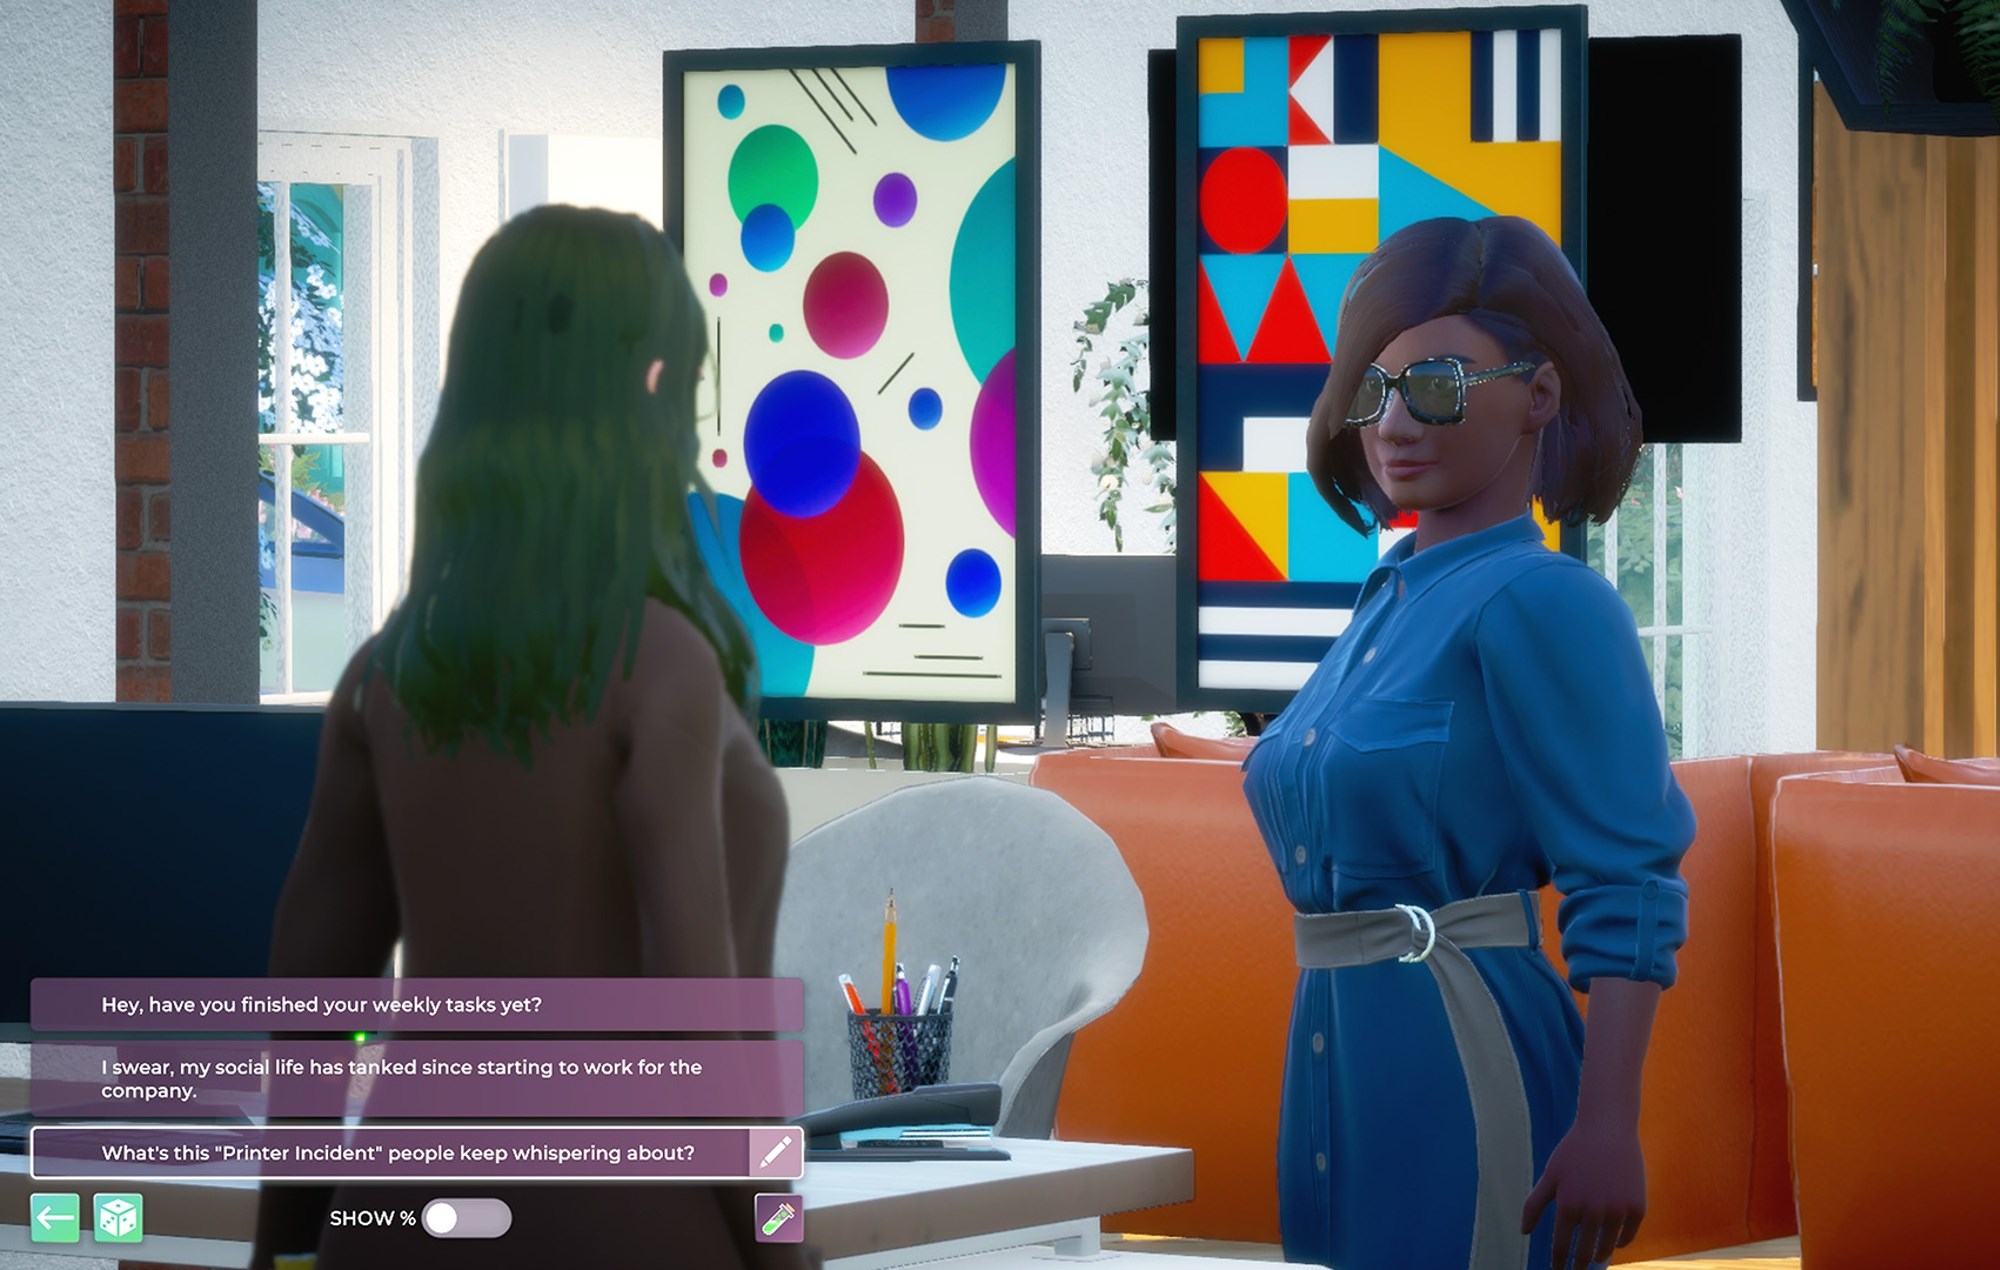 Sims’e rakibi Life by You kapsamlı yaşam simülasyonu sunacak